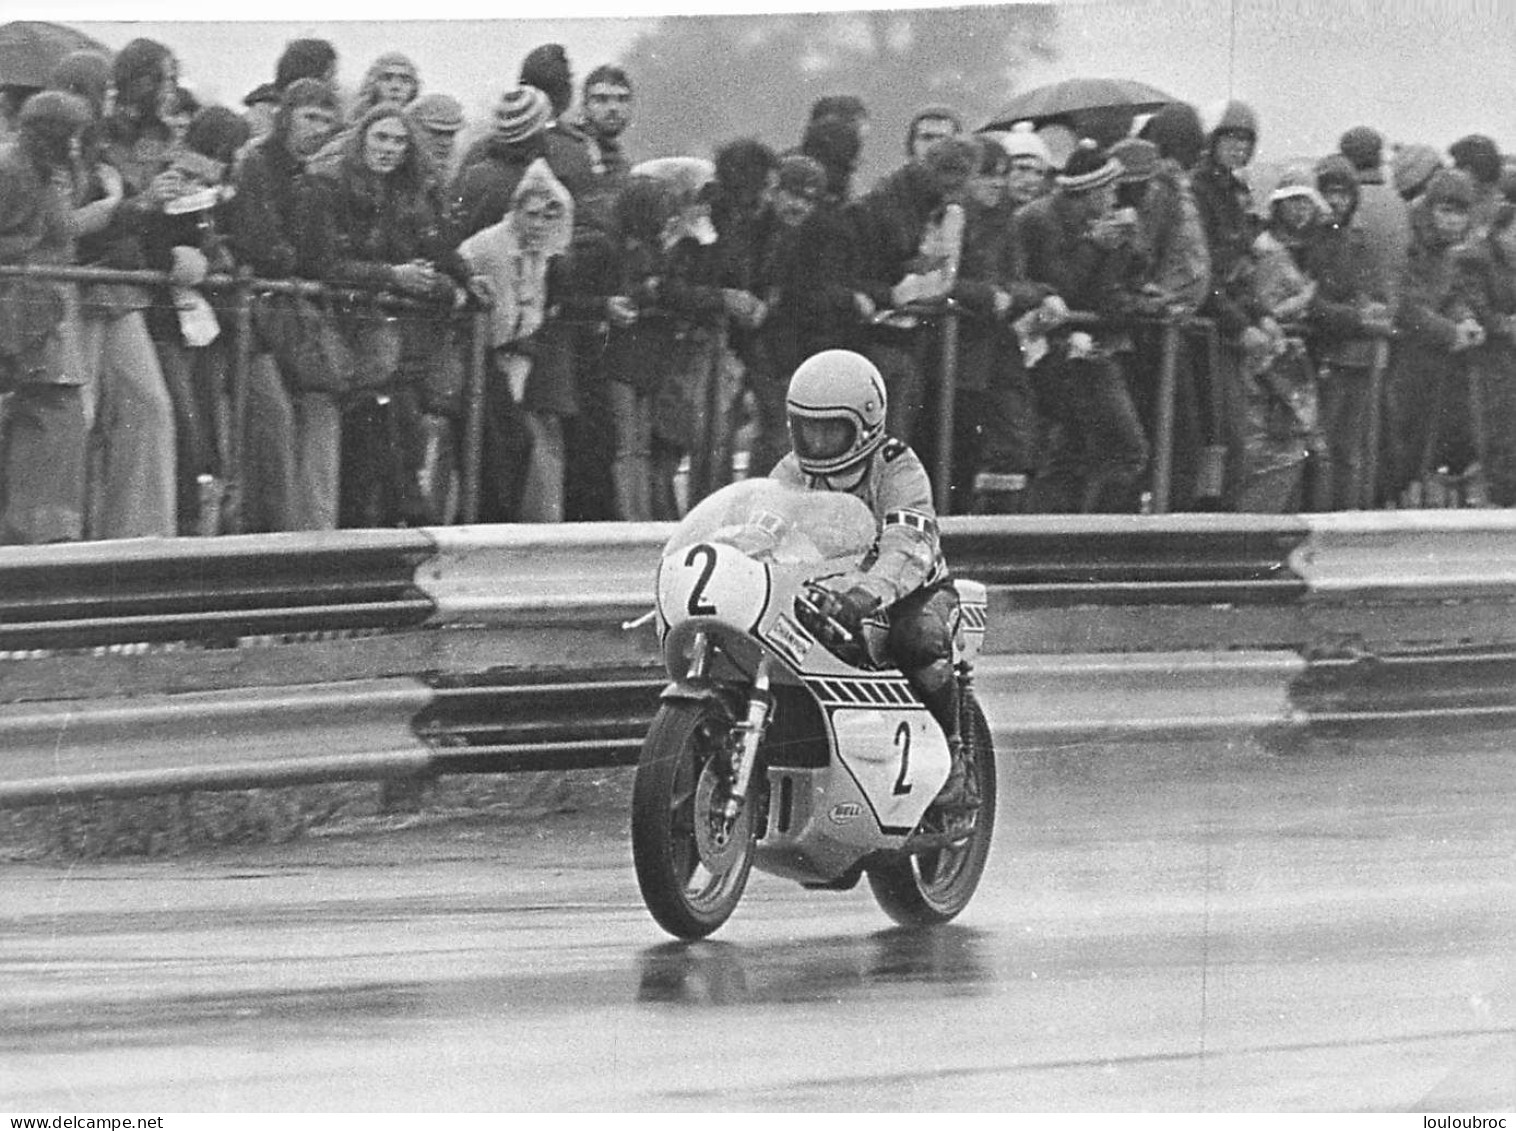 PILOTE MOTO KENNY ROBERTS  COURSE DE L'ANNEE 1974  RACE OF THE YEAR PHOTO DE PRESSE  18X13CM R1 - Sport